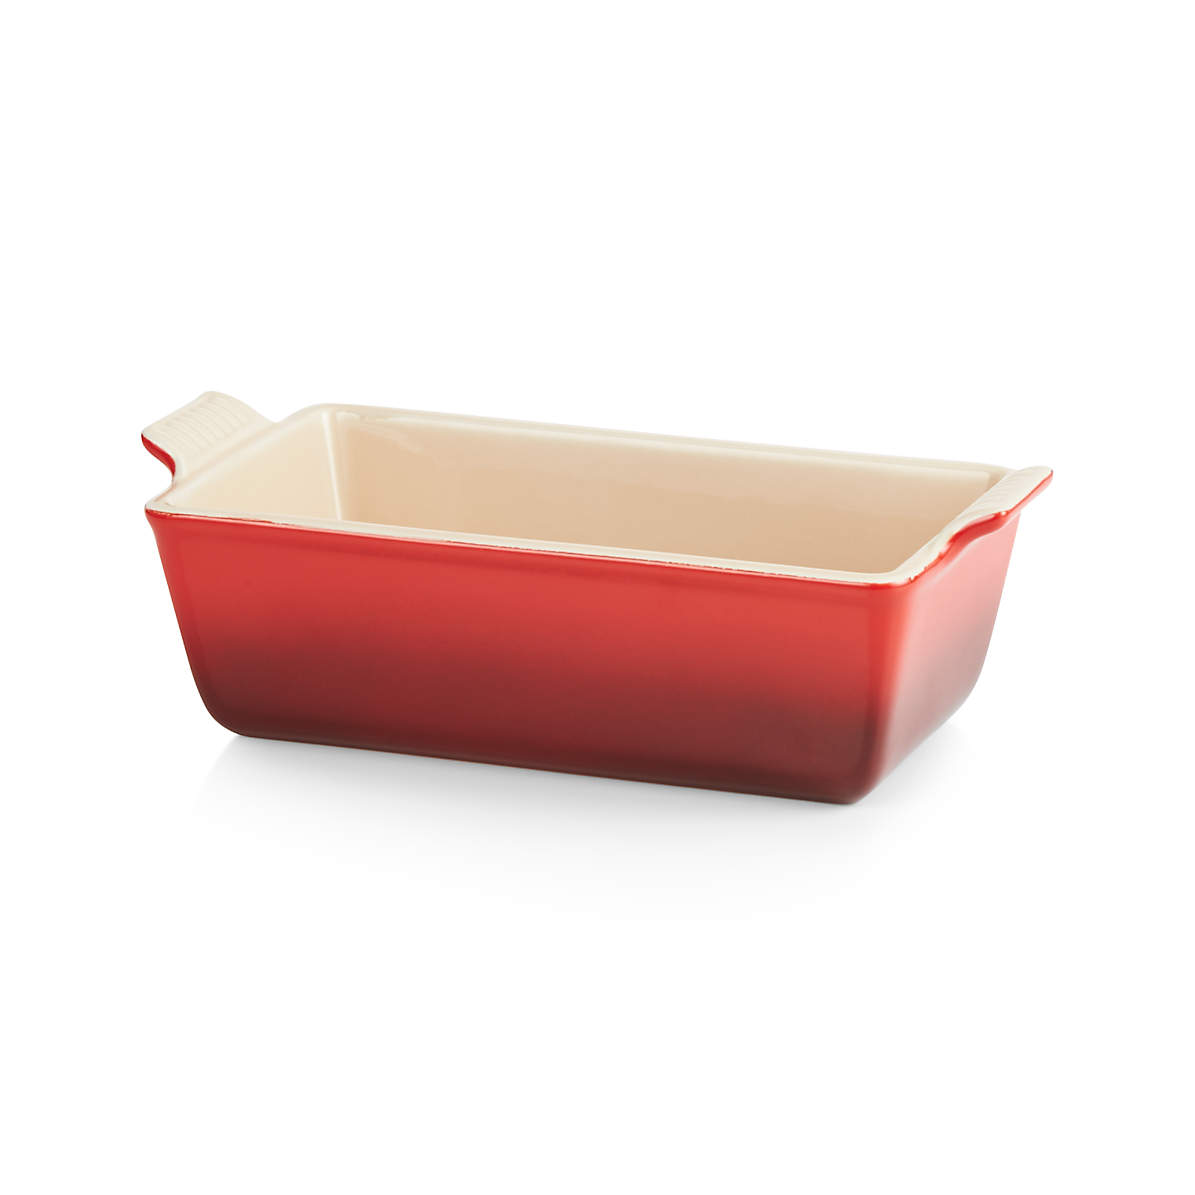 Le Creuset 5-Piece Cerise Red Stoneware Ceramic Bakeware Set + Reviews